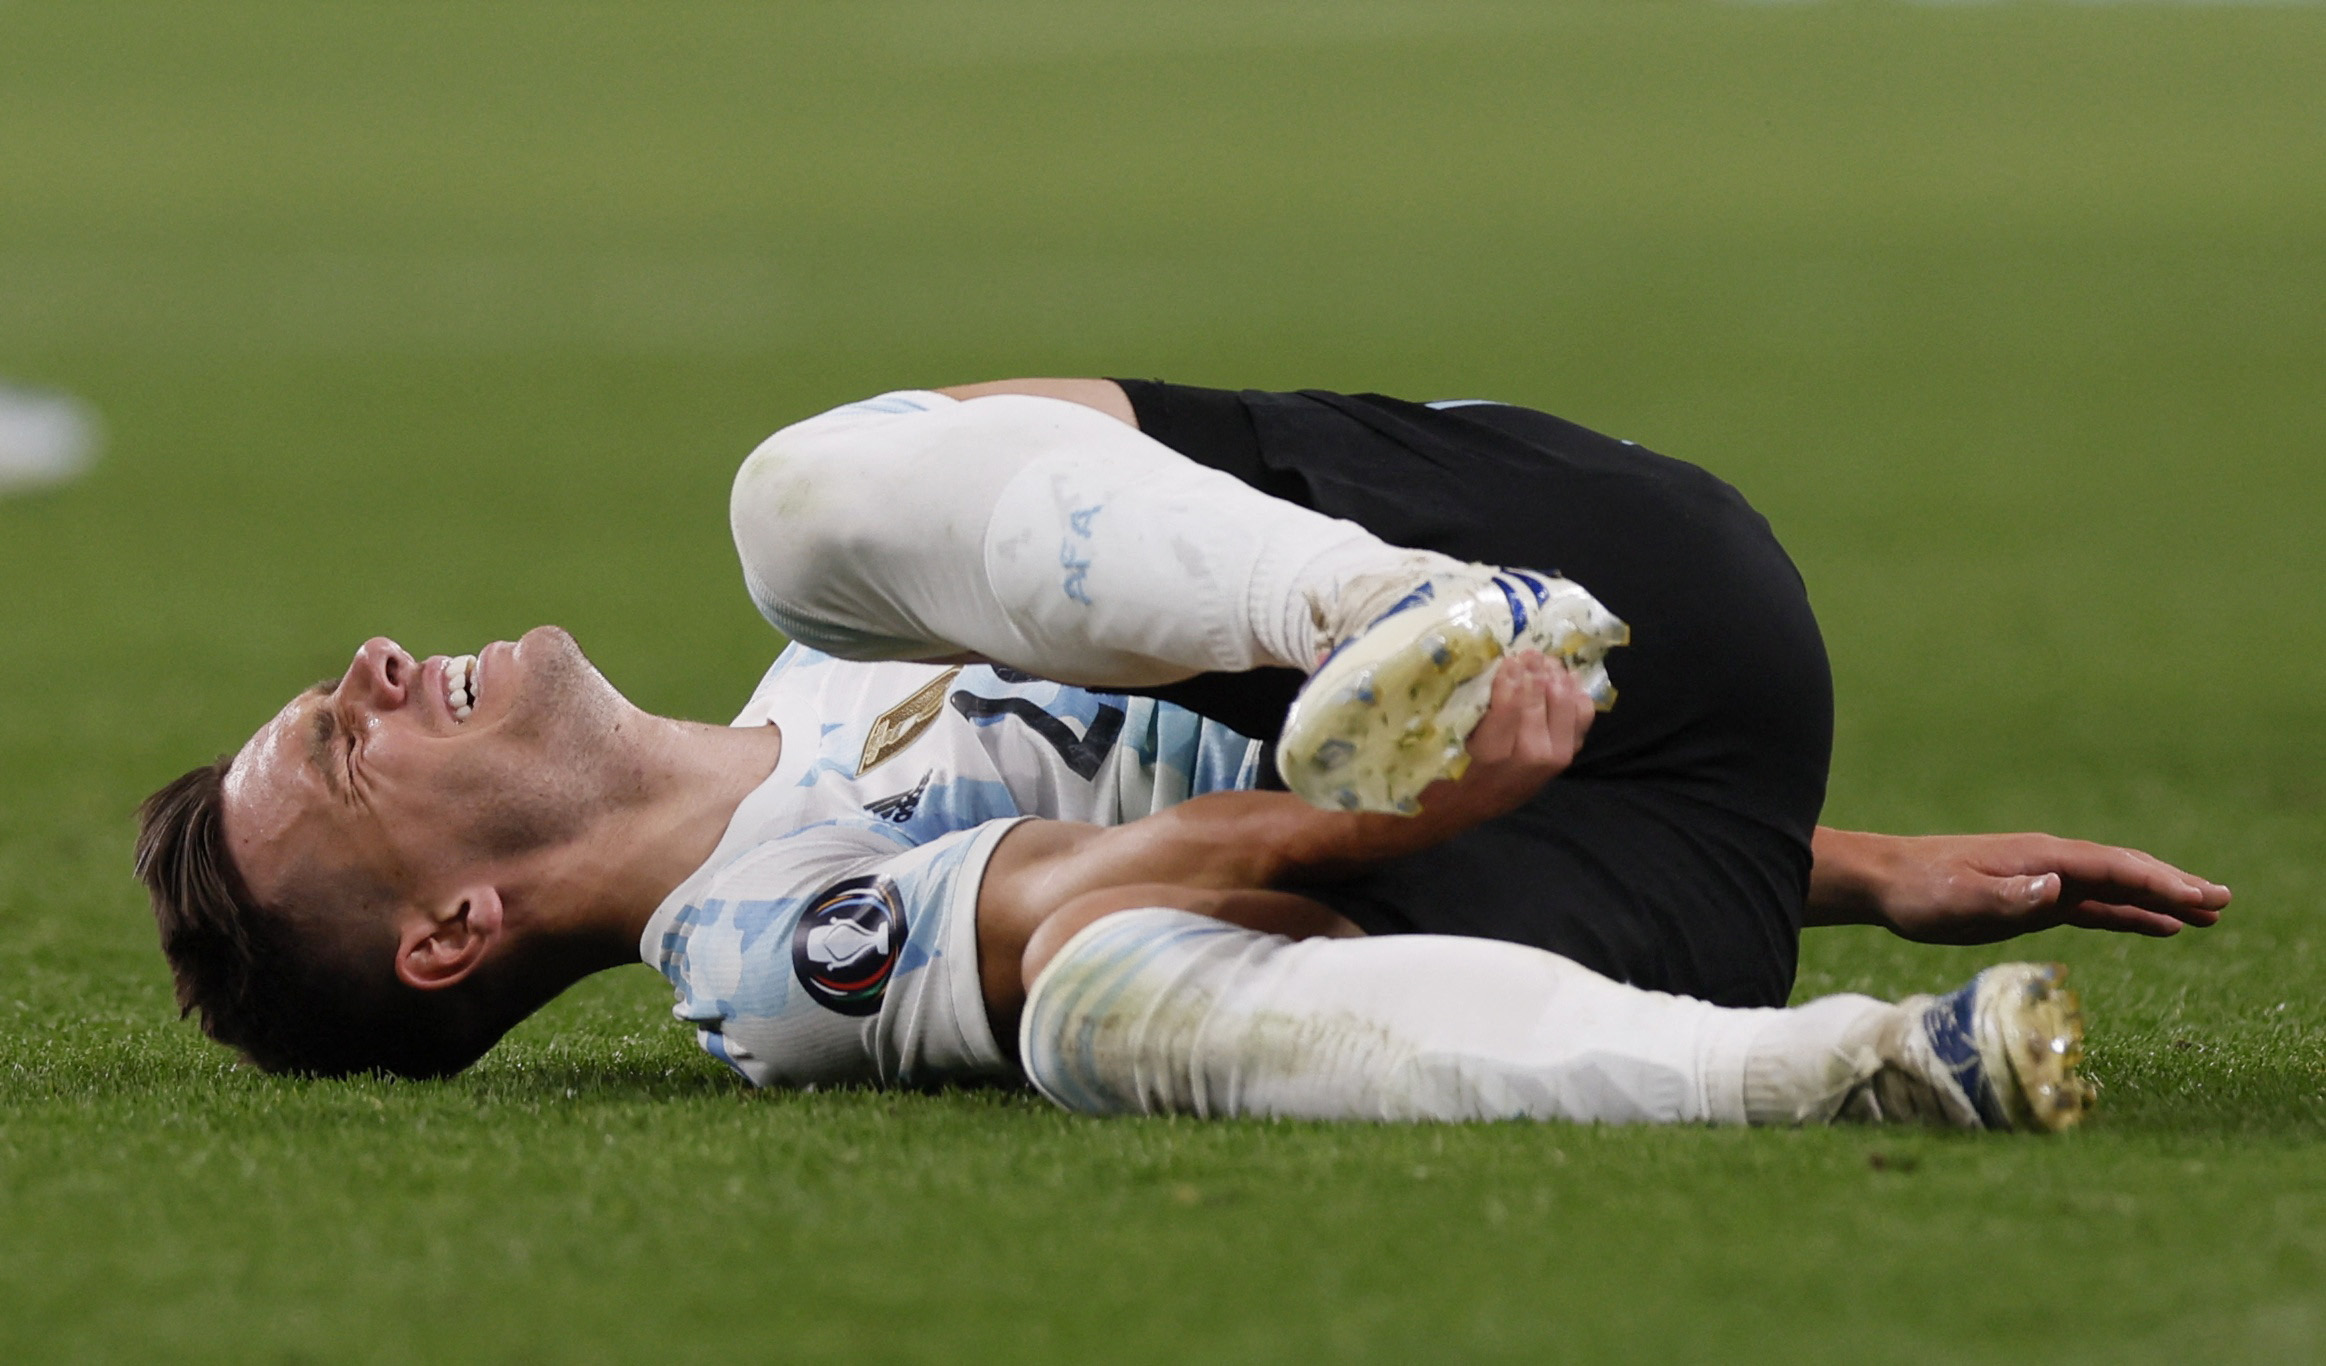 La lesión de Lo Celso sería lo más grave de lo esperado y podría perderse el Mundial: en las próximas horas se conocerá el parte médico (Foto: Reuters)